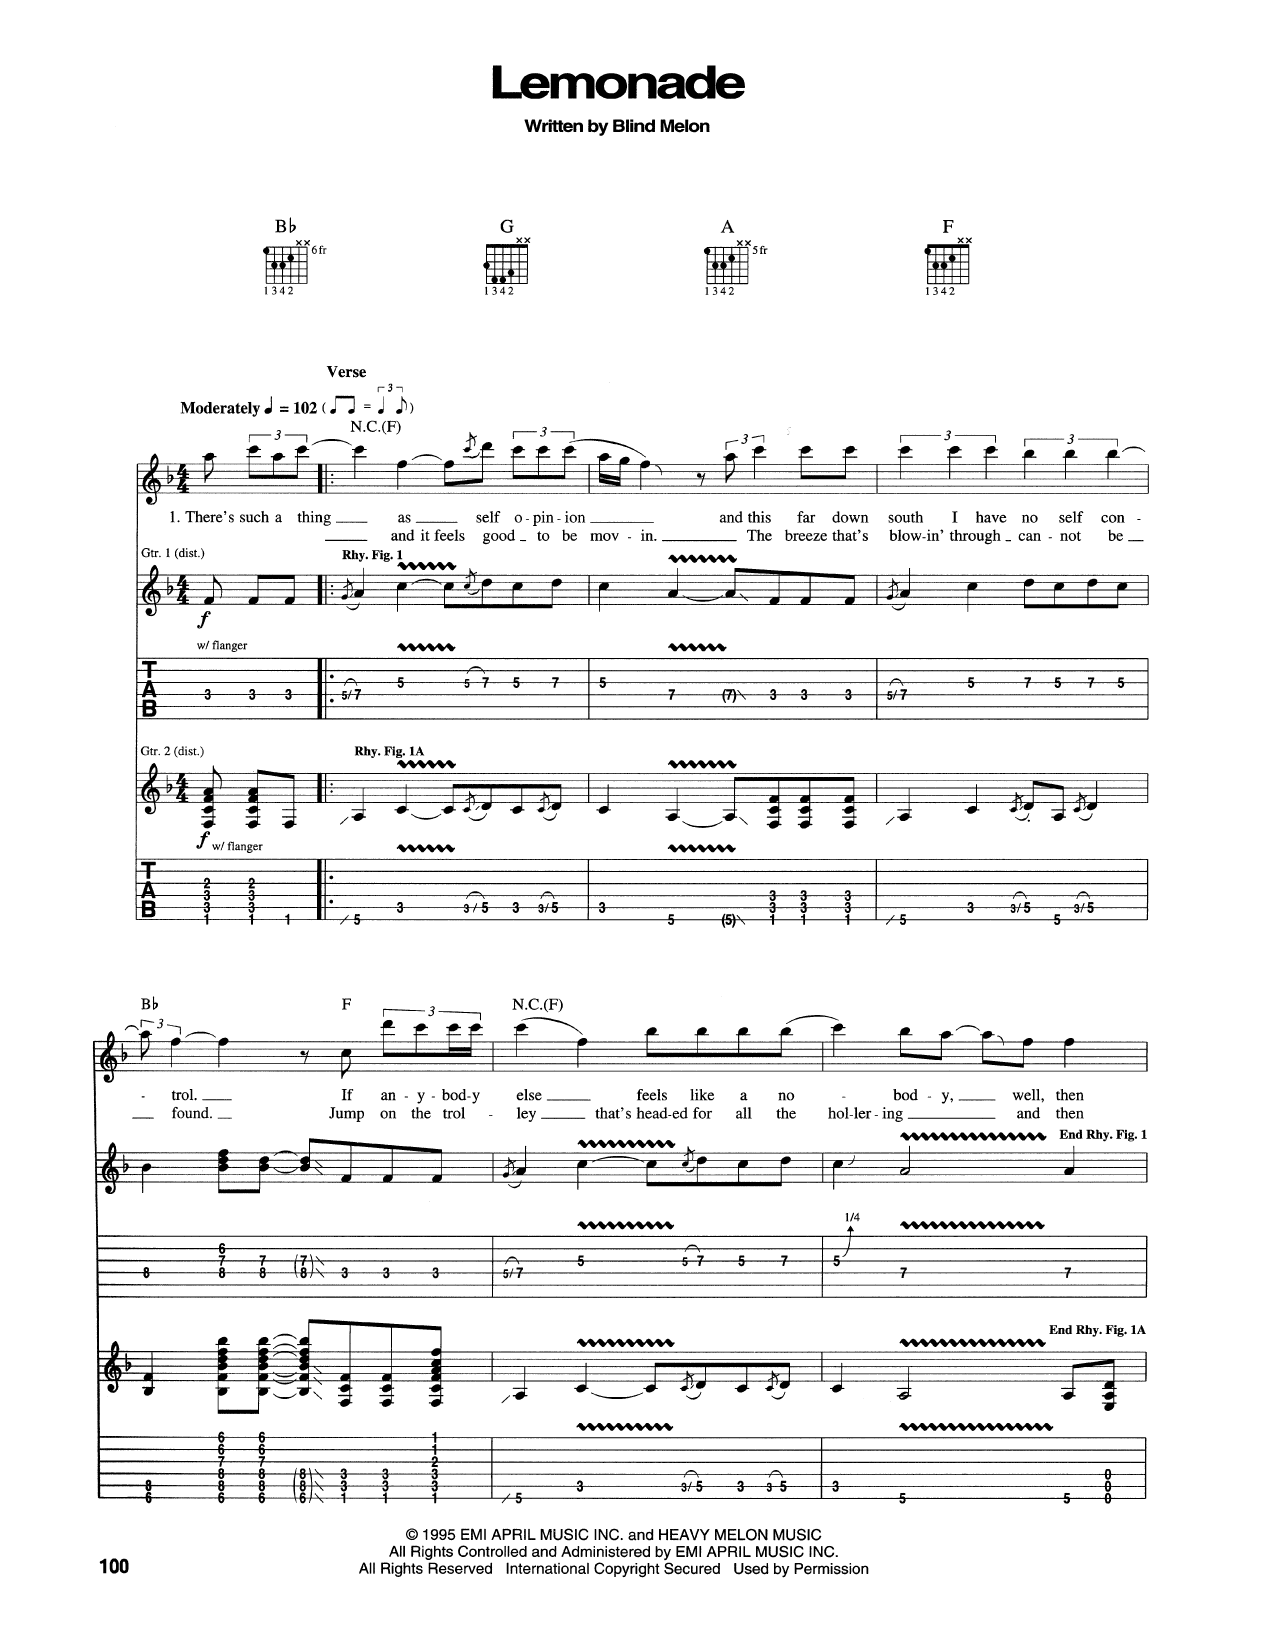 Melon "Lemonade" Sheet Music | Download PDF Score 172770